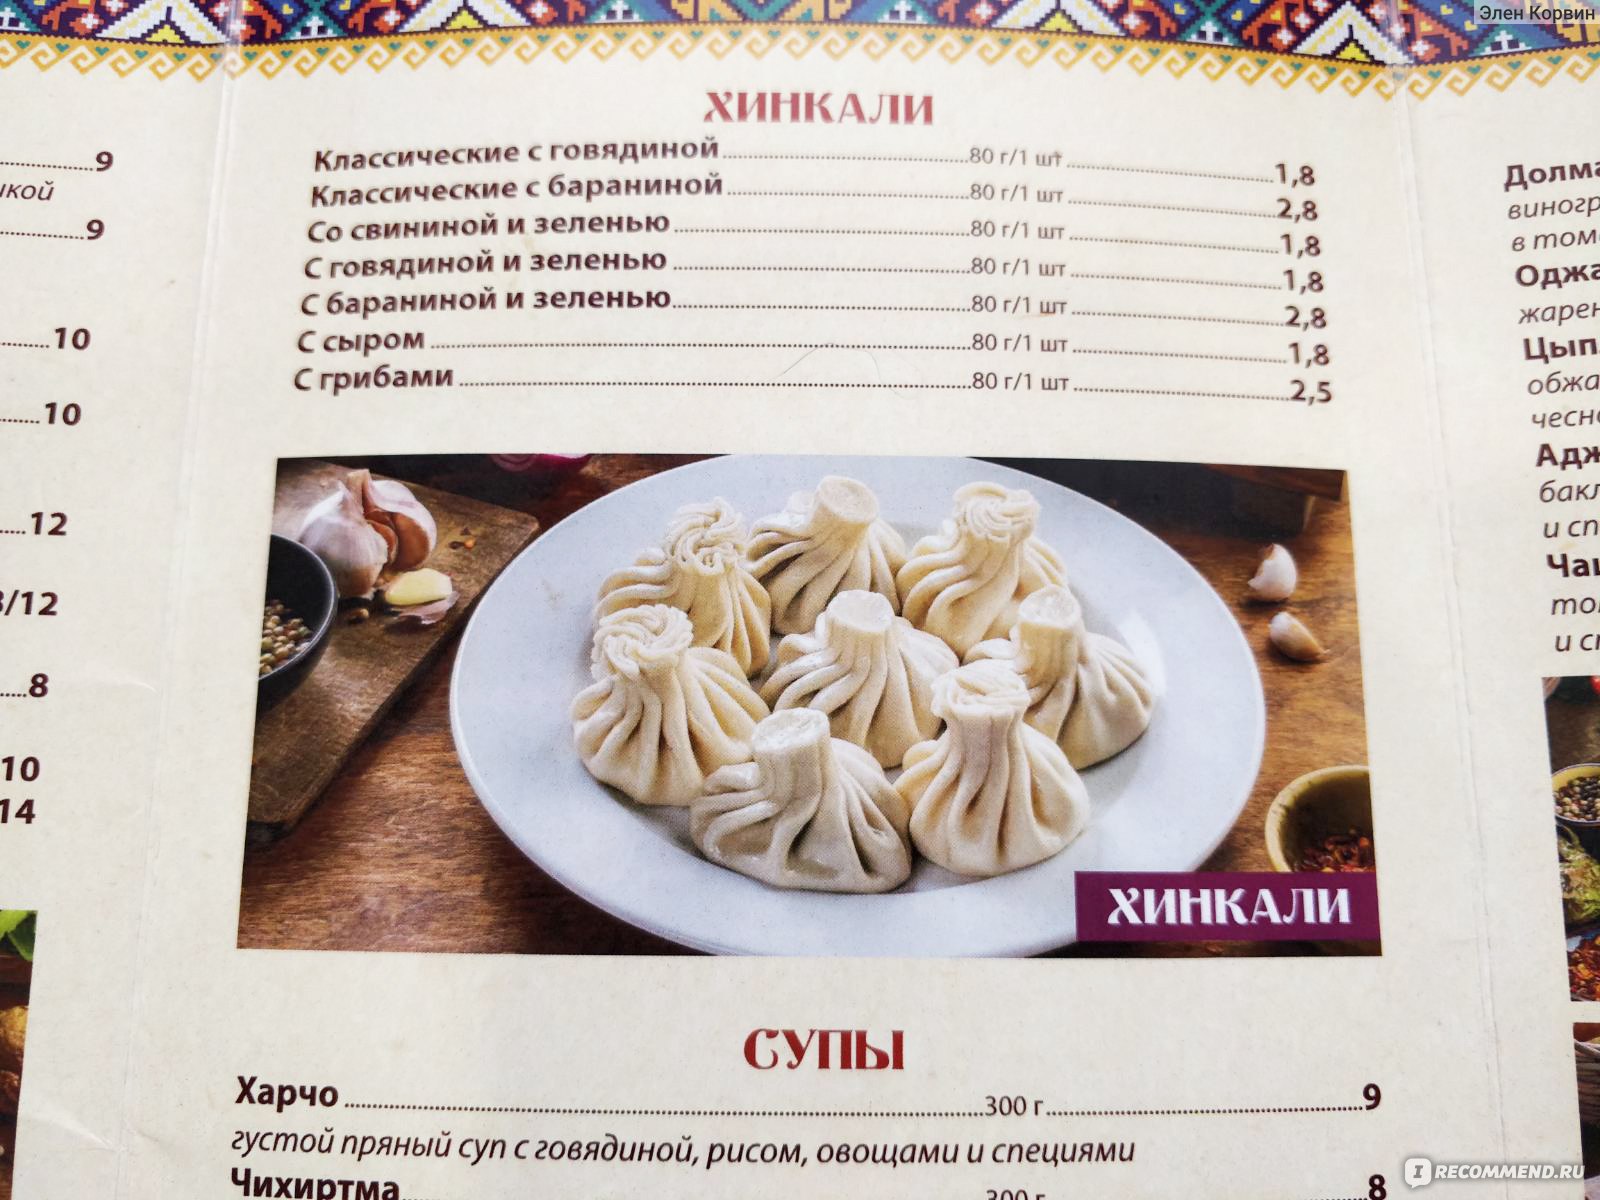 как правильно кушать хинкали грузинские в ресторане